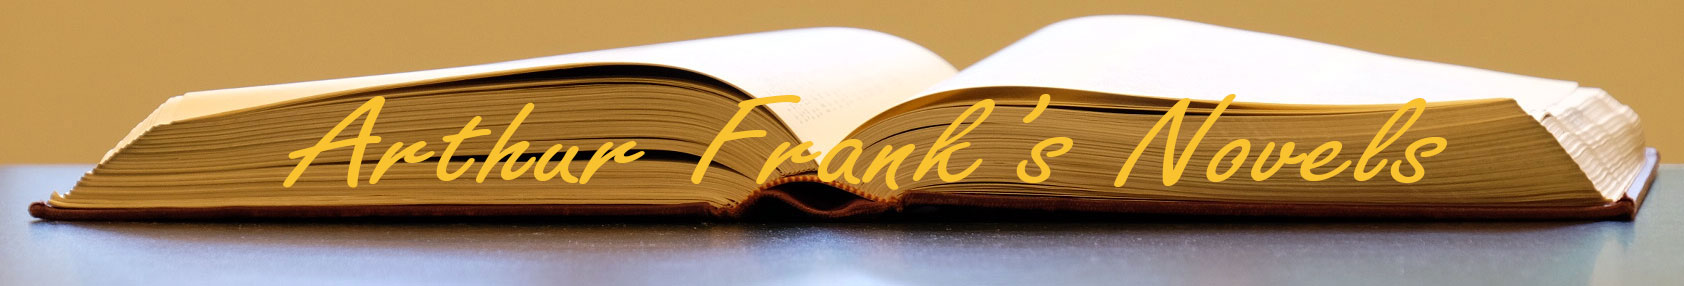 Arthur Frank's Novels Header Image